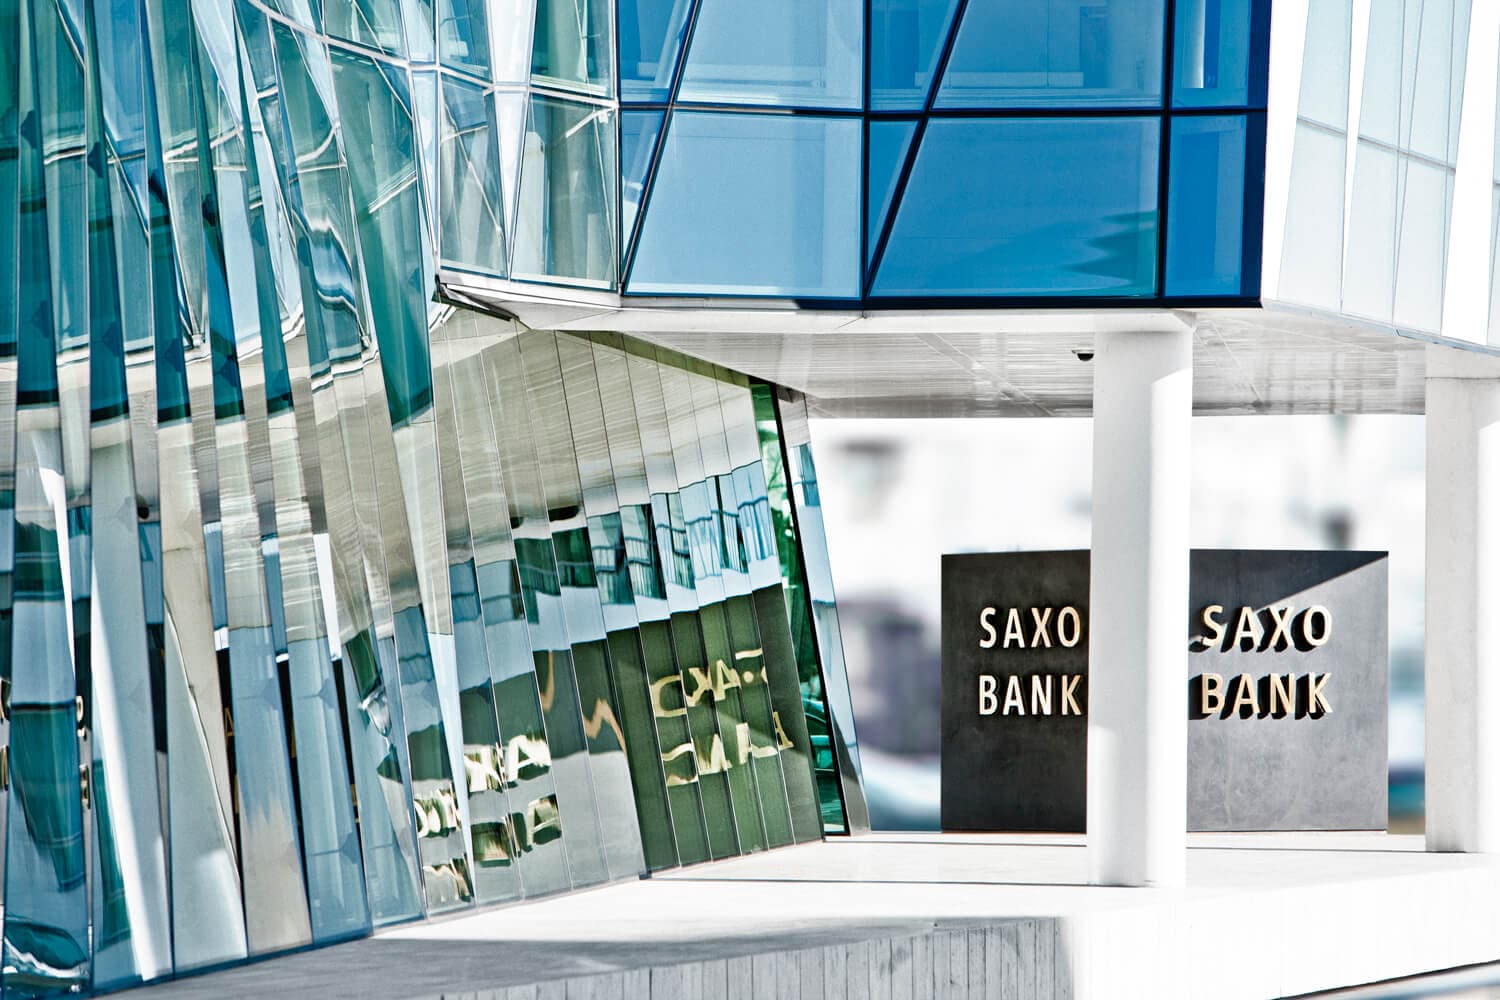 دمج مبيعات Saxo العالمية وSXO في كيان واحد يسمى المجموعة التجارية Group Commercial